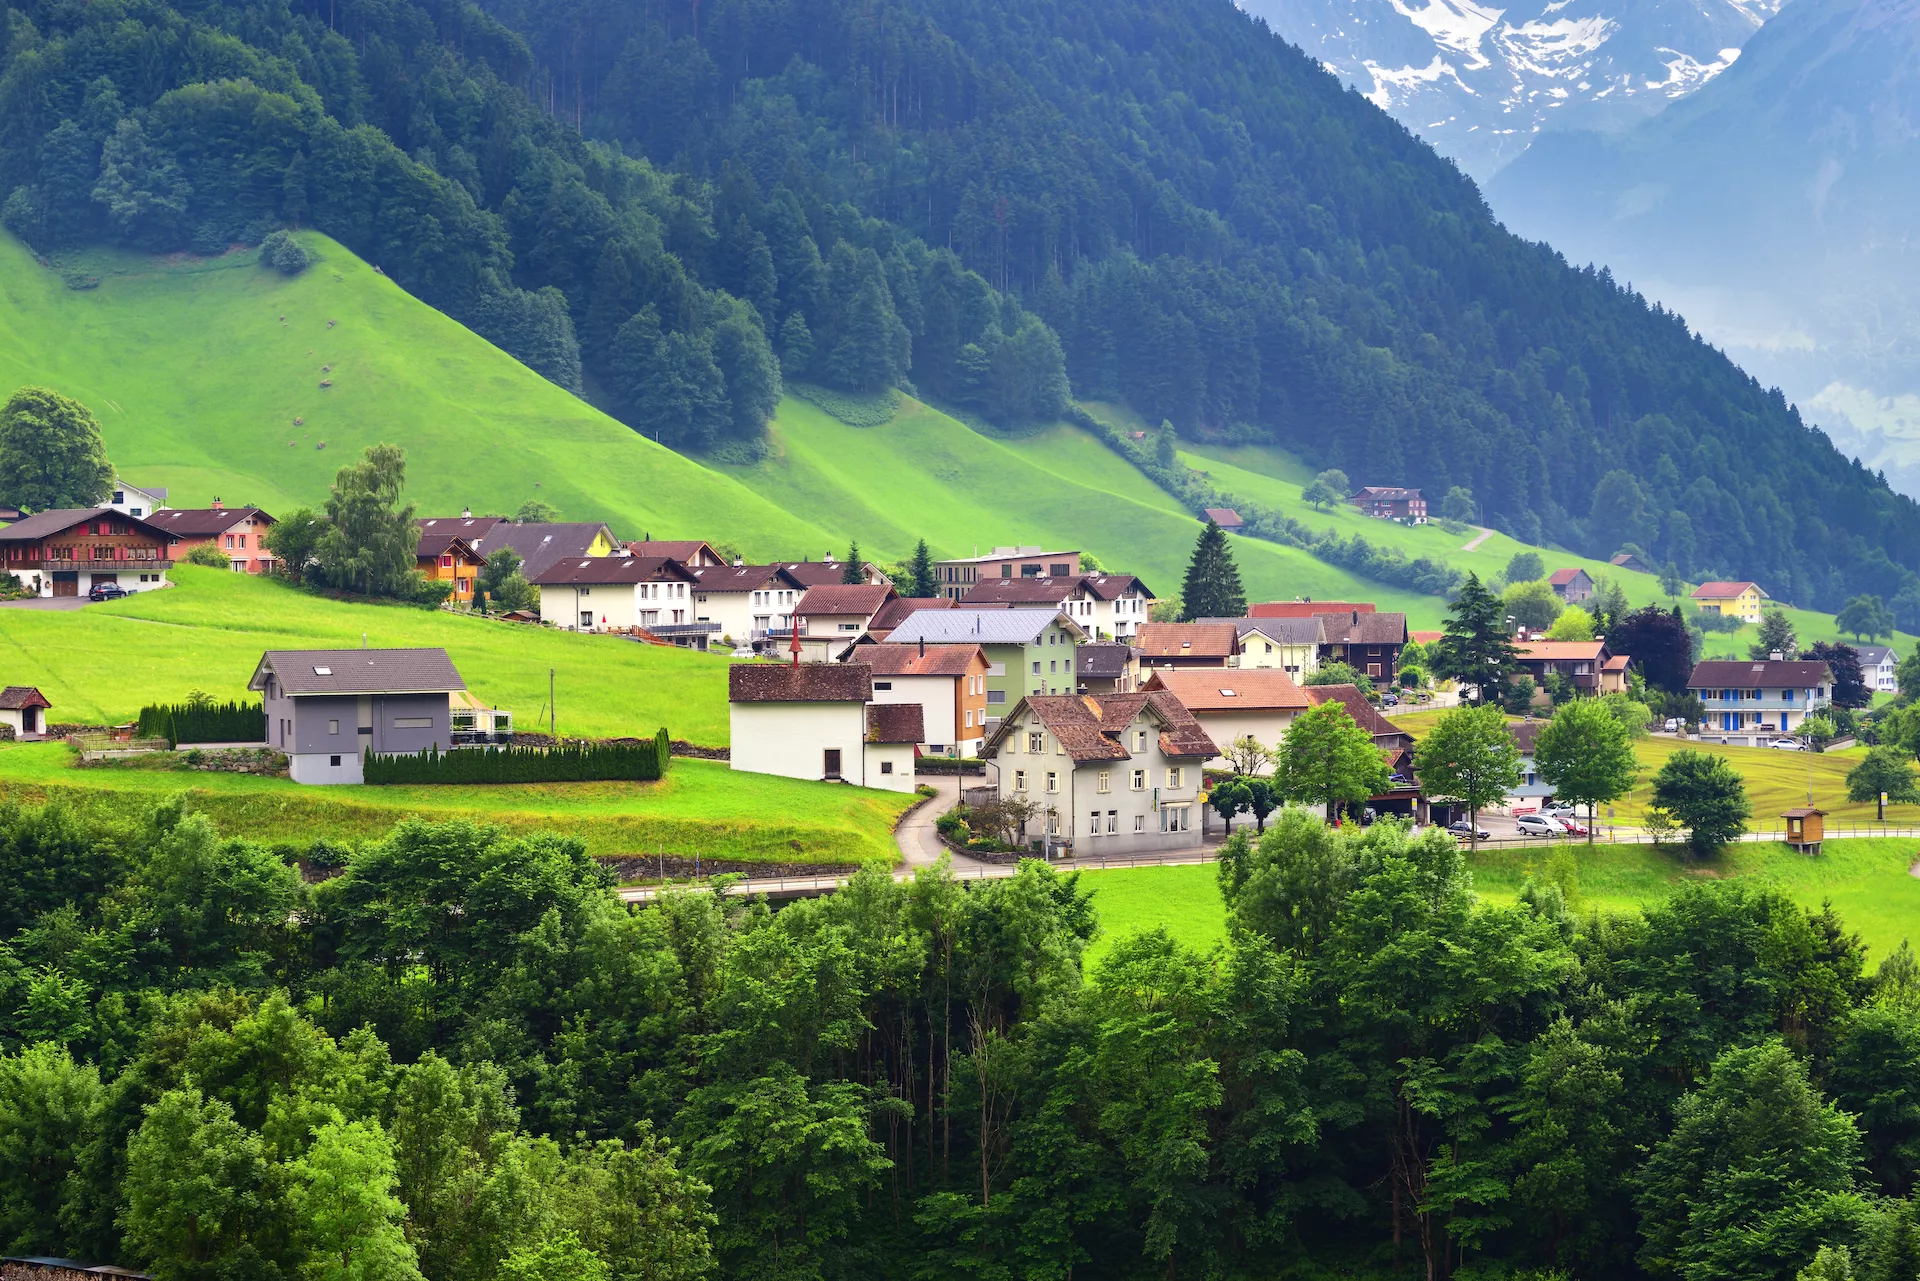 Splendida vista sull'idilliaco paesaggio montano delle Alpi con i tradizionali chalet nelle vicinanze della città di Altdorf